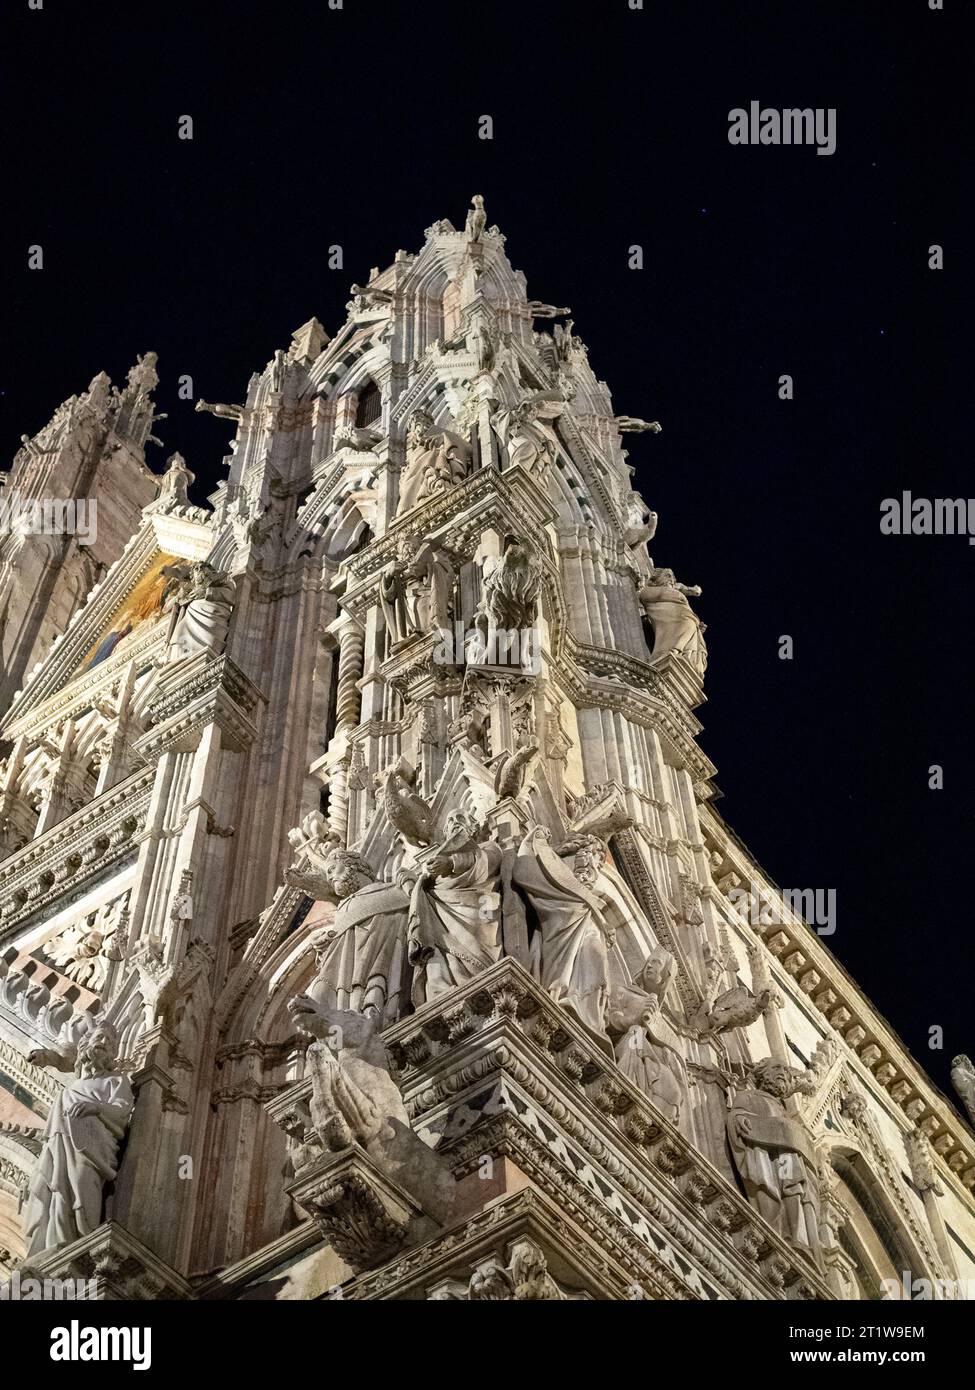 Blick auf die Statuen in der rechten Ecke der Fassade der Kathedrale von Siena Stockfoto